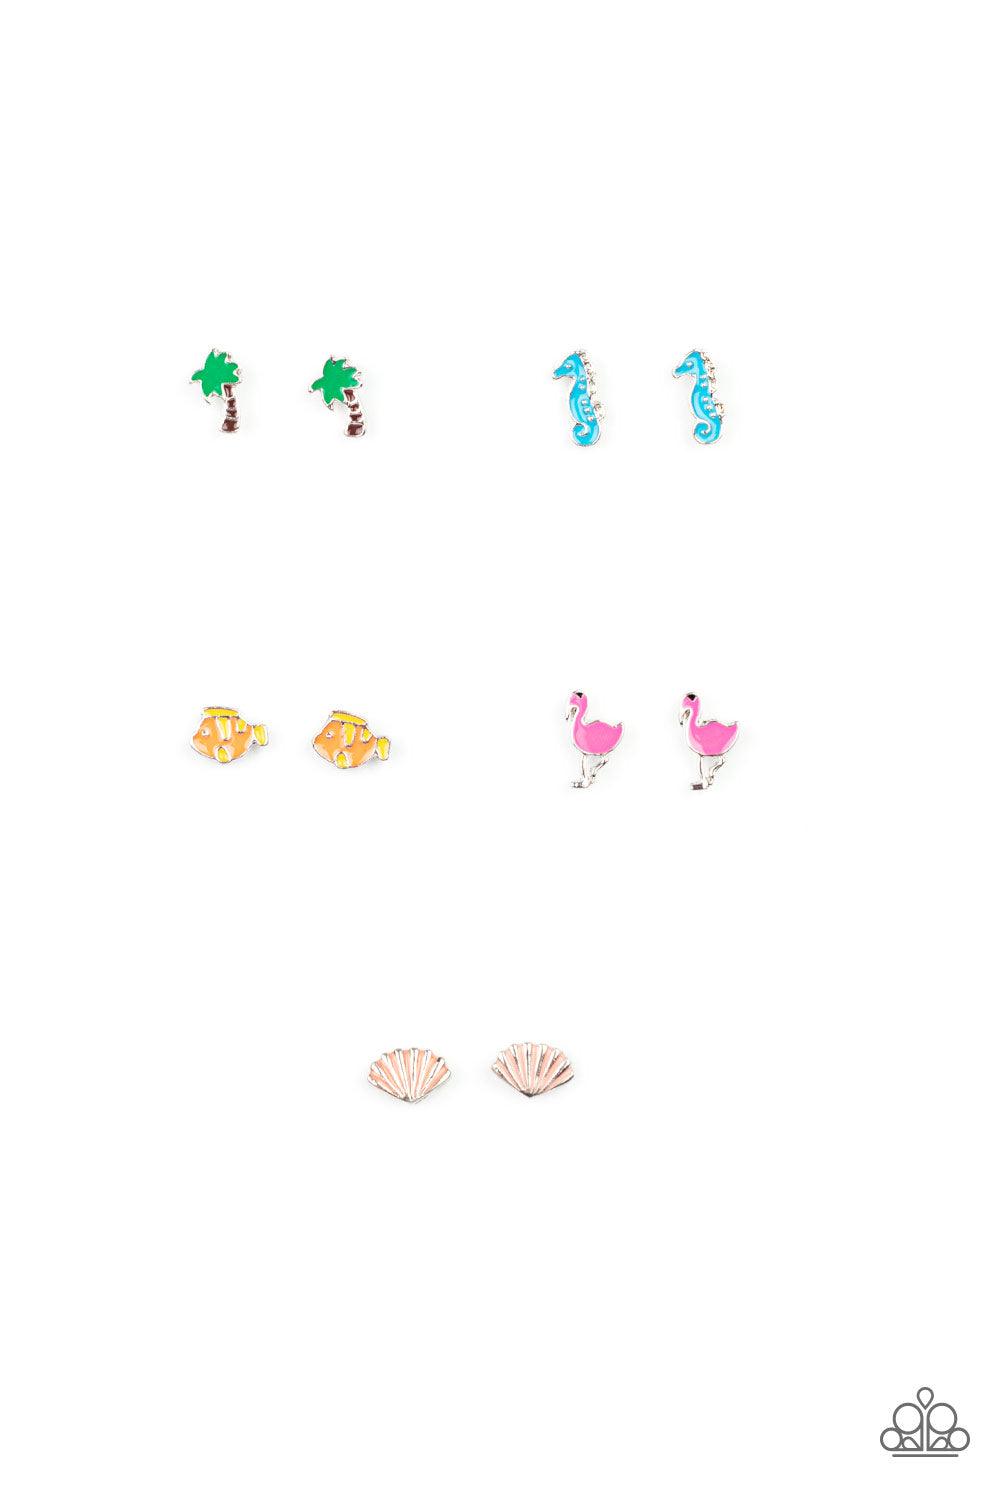 Starlet Shimmer Summertime Fun Earrings - Jewelry by Bretta